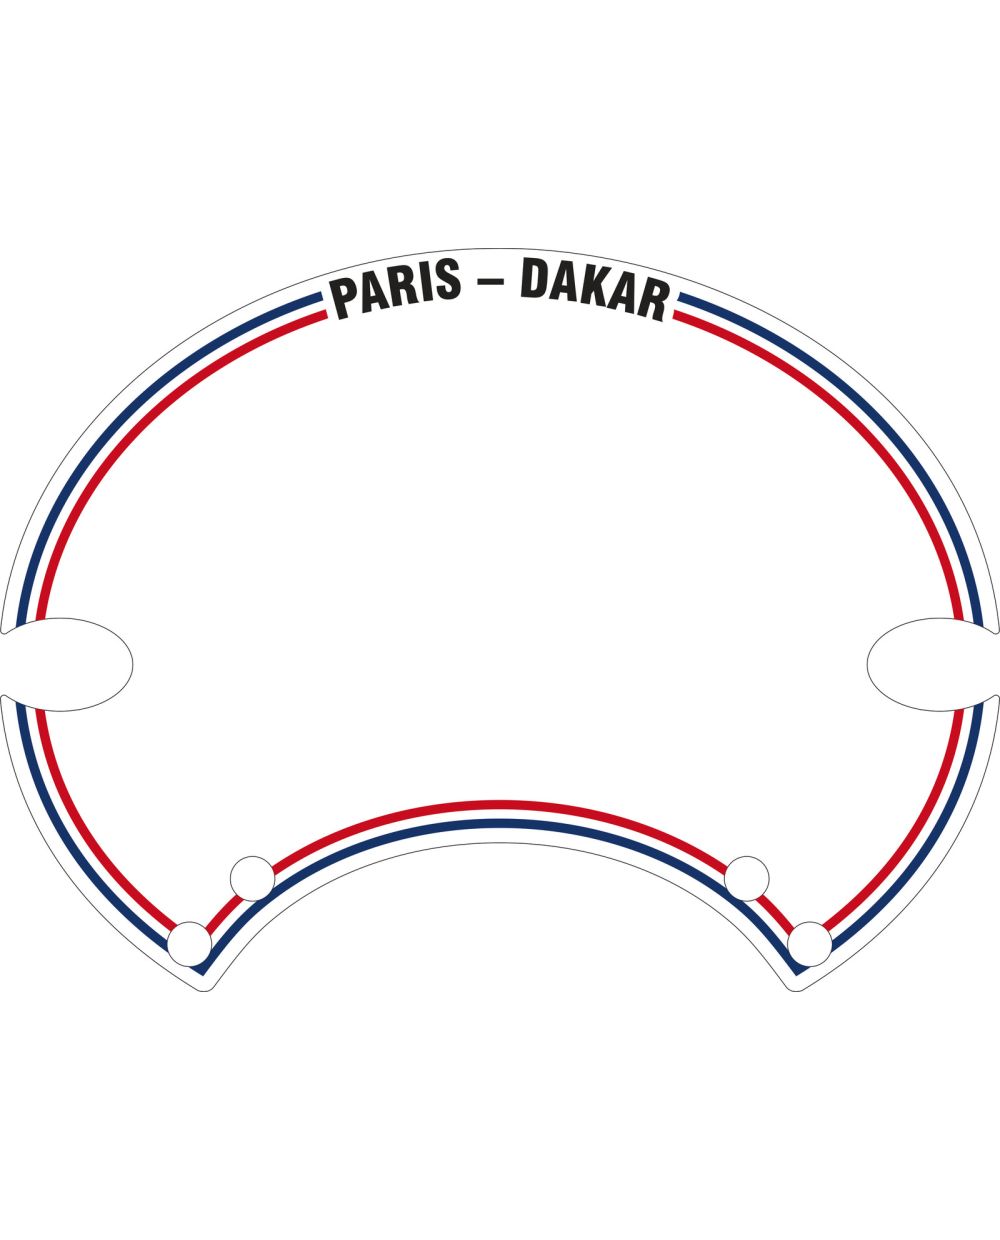 Autocollant Paris-Dakar, pour plaque porte-numéro SixDays PrestonPetty,  Art. 60405W/G, 60406W/G bzw. 60407W/G. Pièce